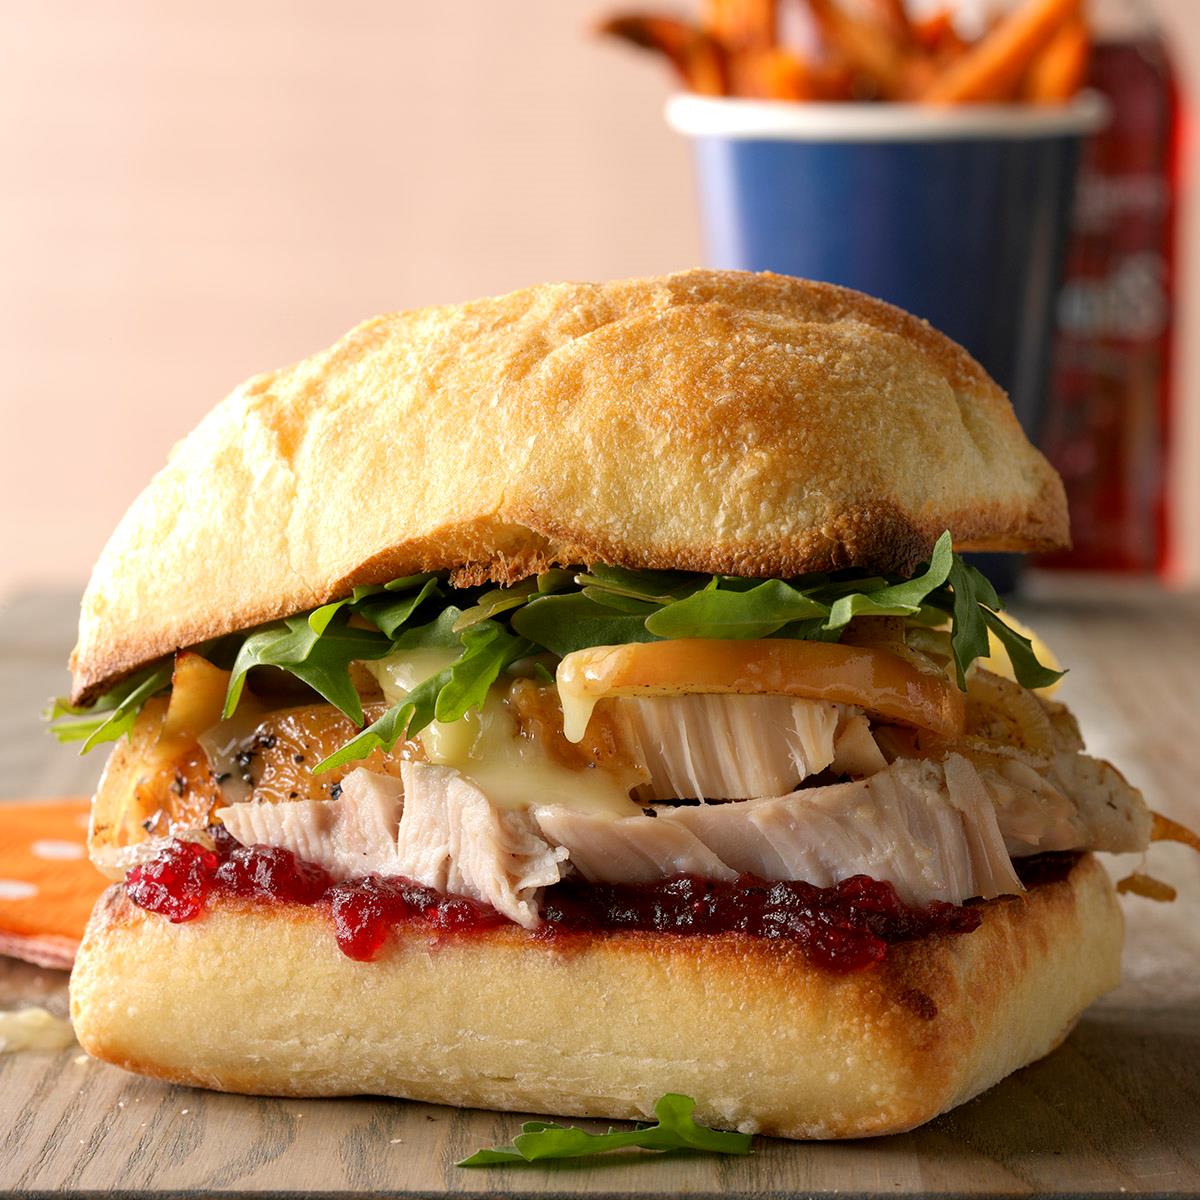 Bistro Turkey Sandwich image.